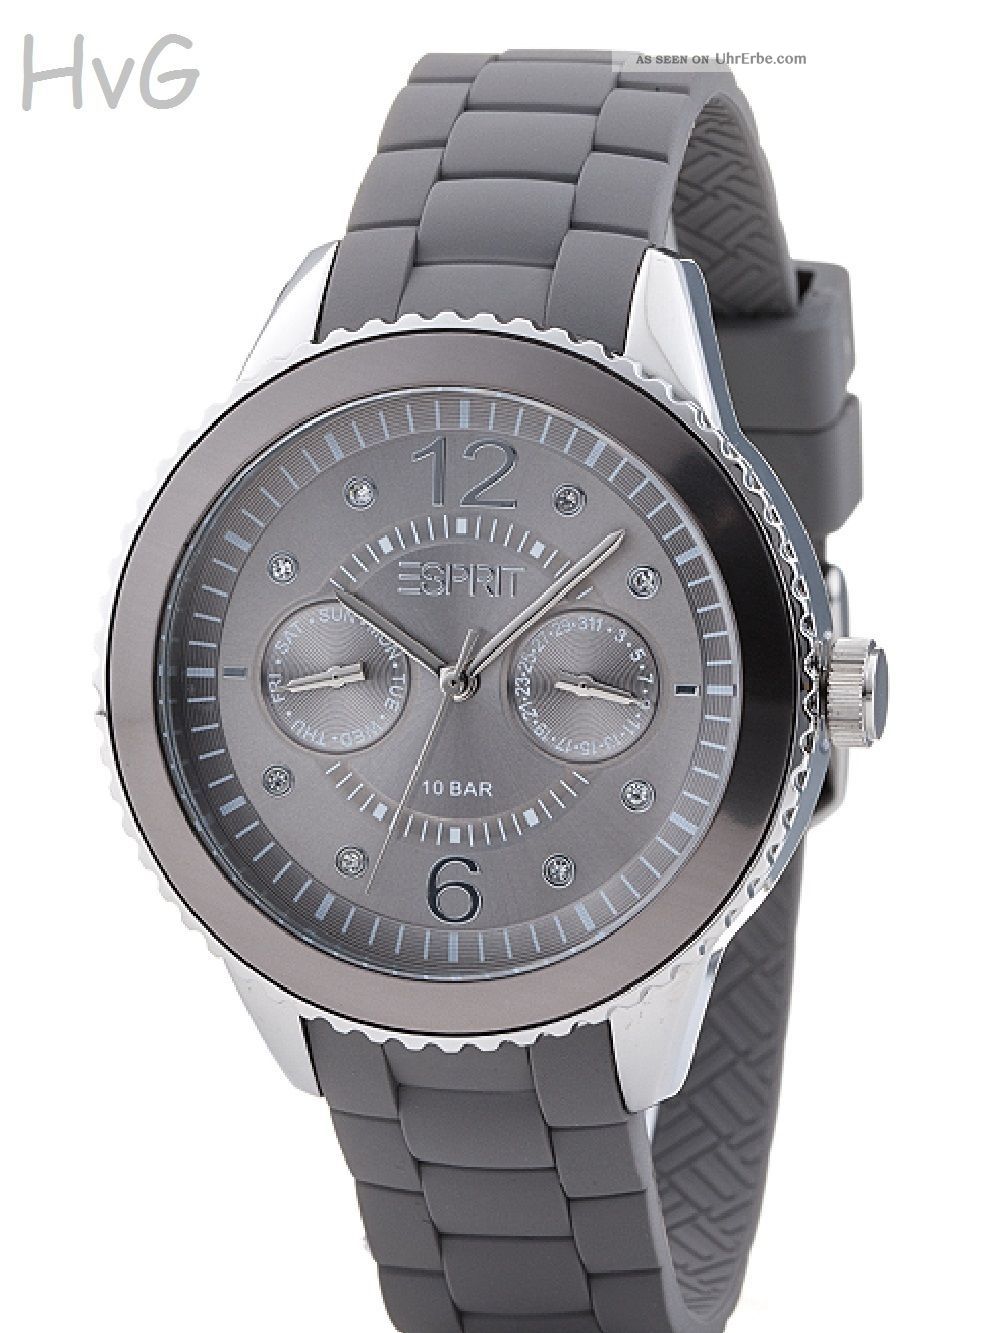 Weihnachts - Angebot Esprit Uhr Marin 68 Speed Grau Silber (von Privat) Armbanduhren Bild